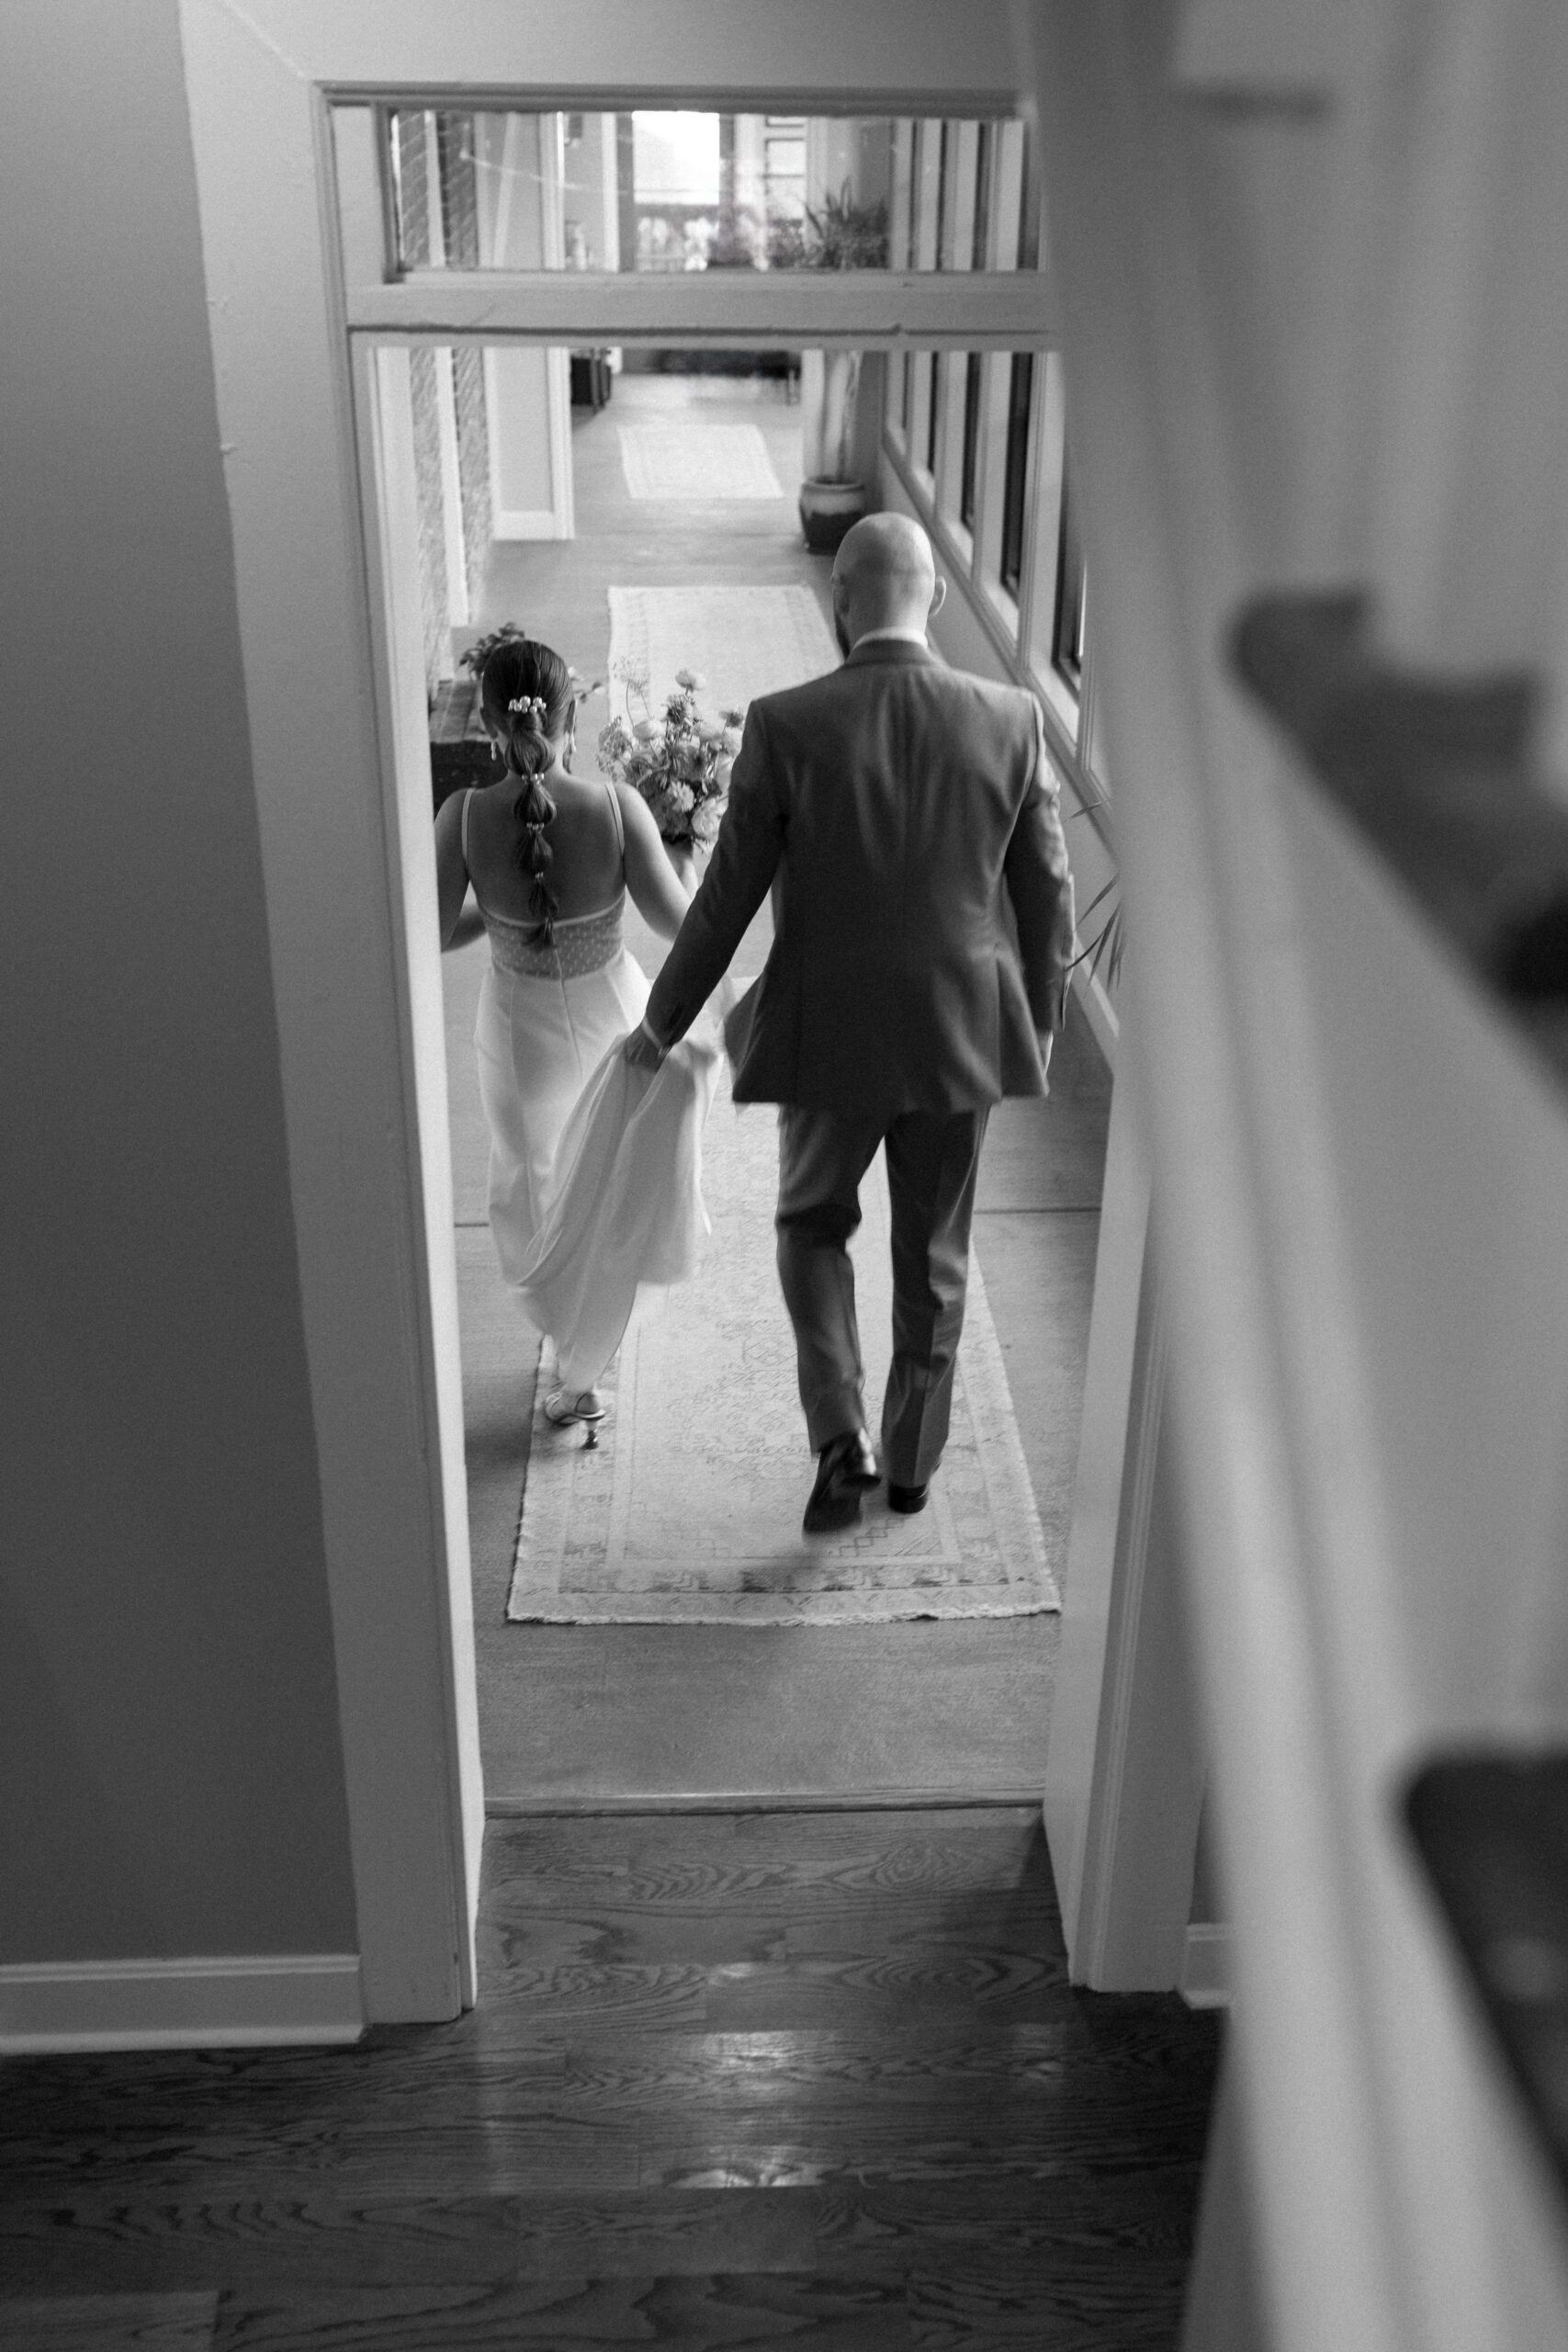 The couple walking away through a door.